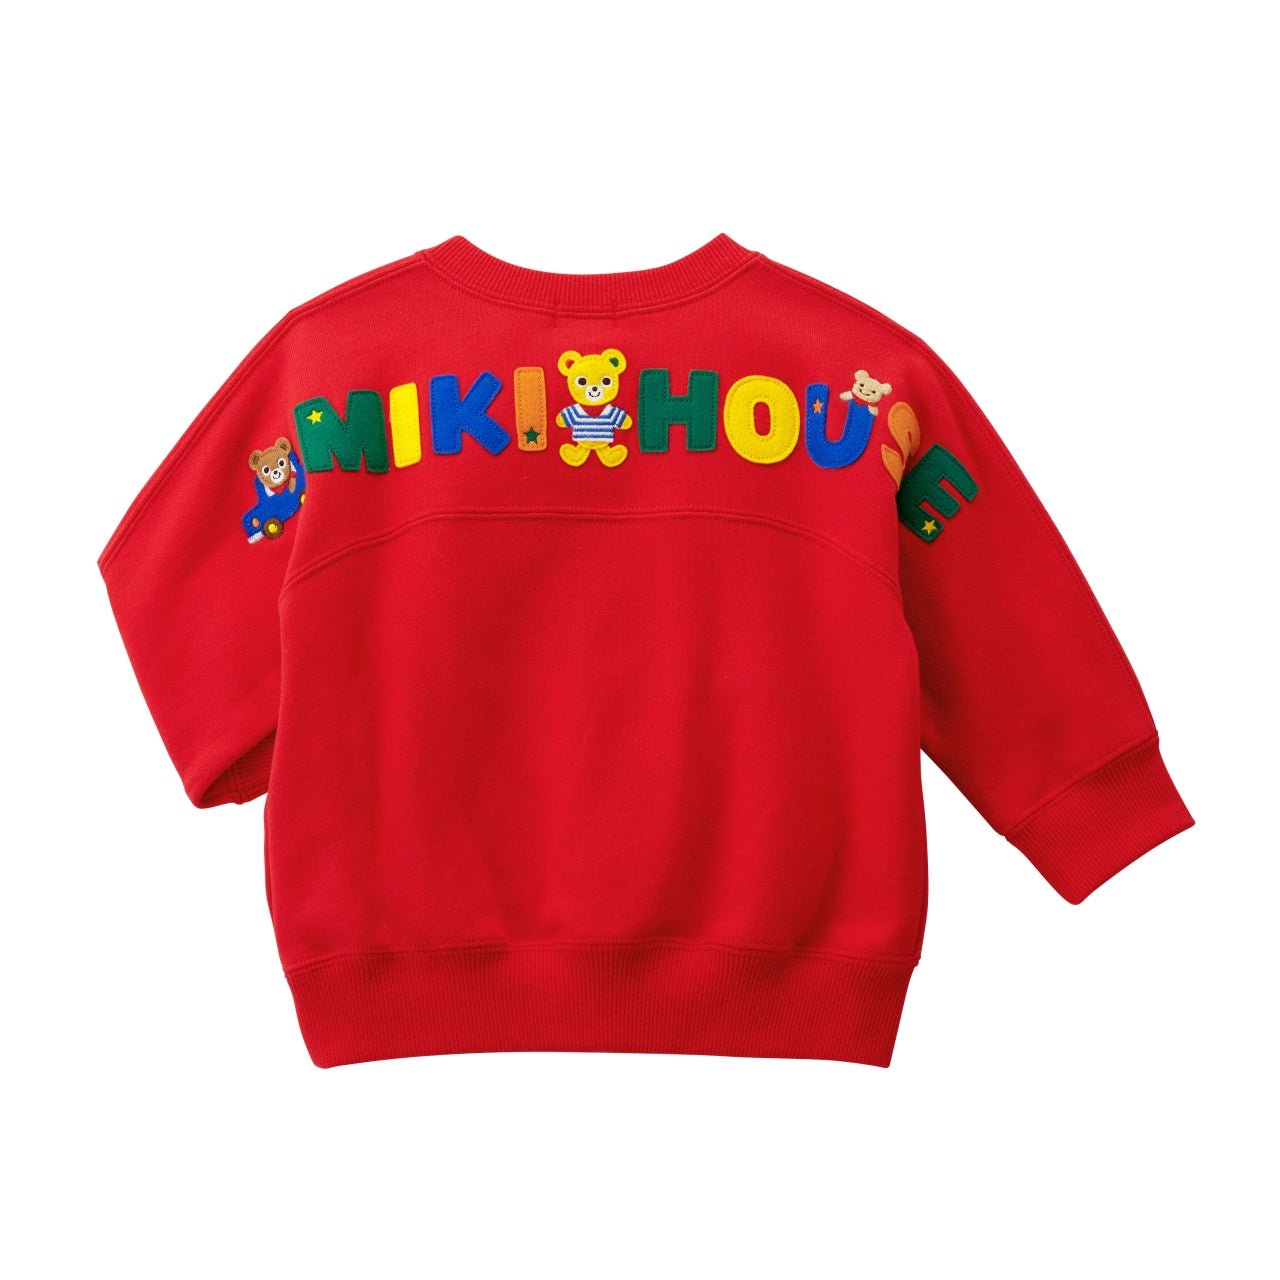 Kangaroo Pocket Sweatshirt - Pucchi - 13-5605-578-02-80